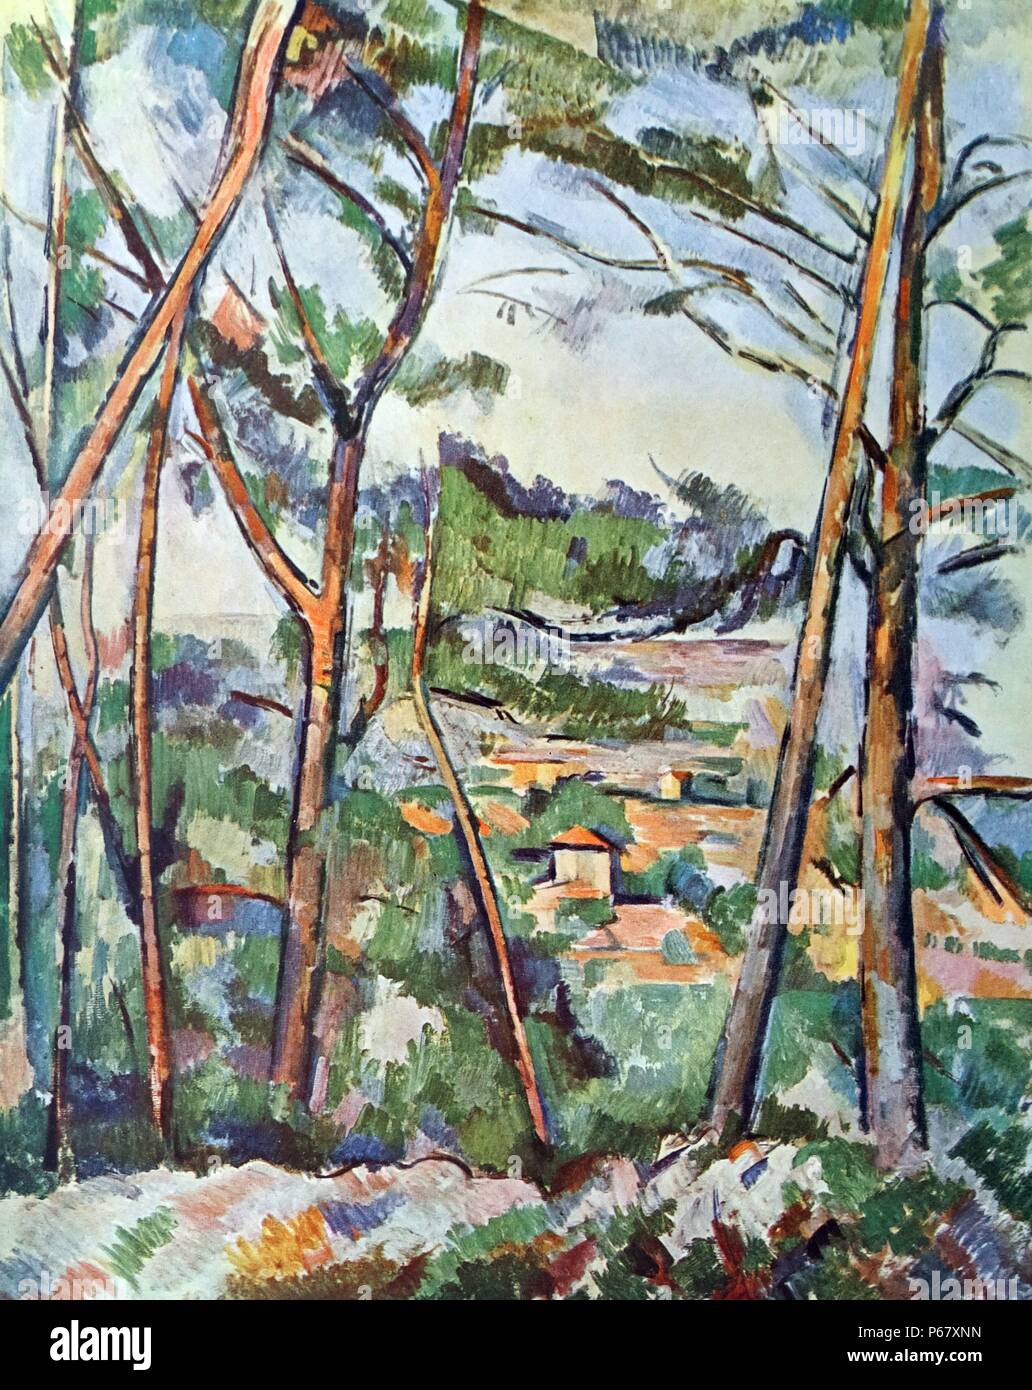 Gemälde mit dem Titel "Blick auf das Arc-Tal" von Paul Cézanne (1839-1906) französische Künstler und post-impressionistischen Malers. Vom Jahre 1887 Stockfoto